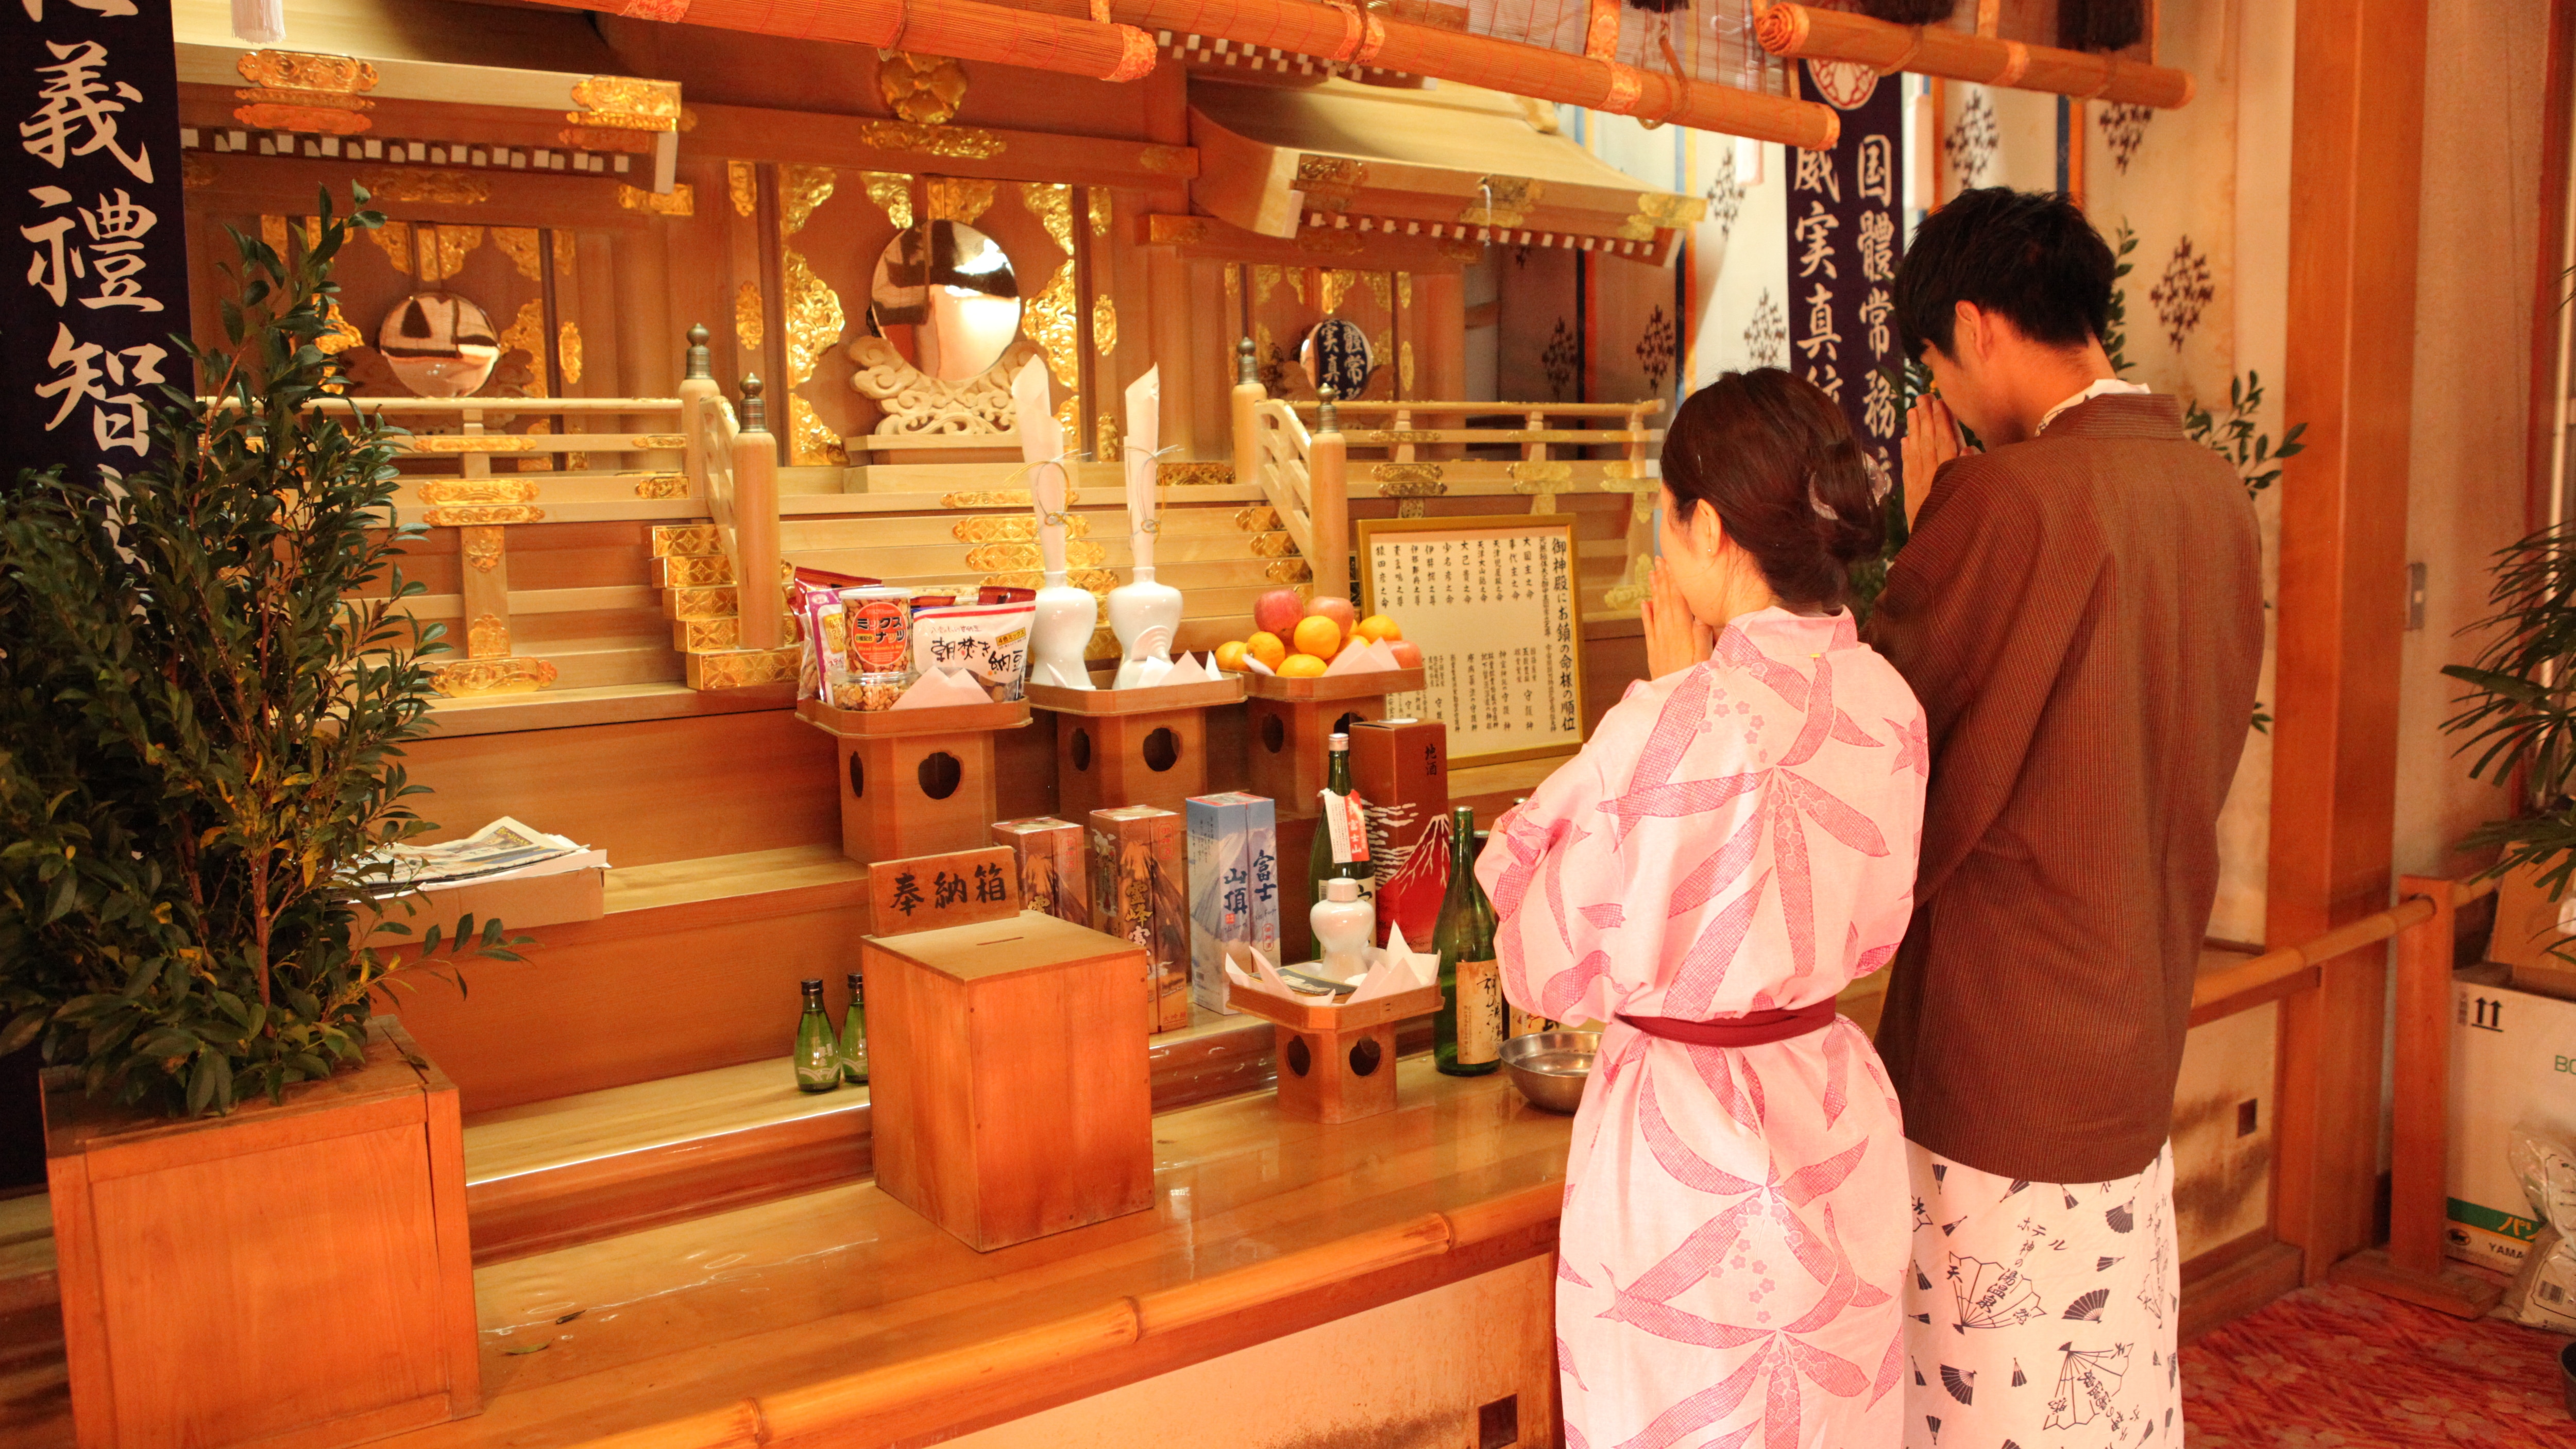 進入入口後左側的大型Kamidana。我們供奉的是溫泉神“Hoshosan Yatsu Gigoku Shrine”。